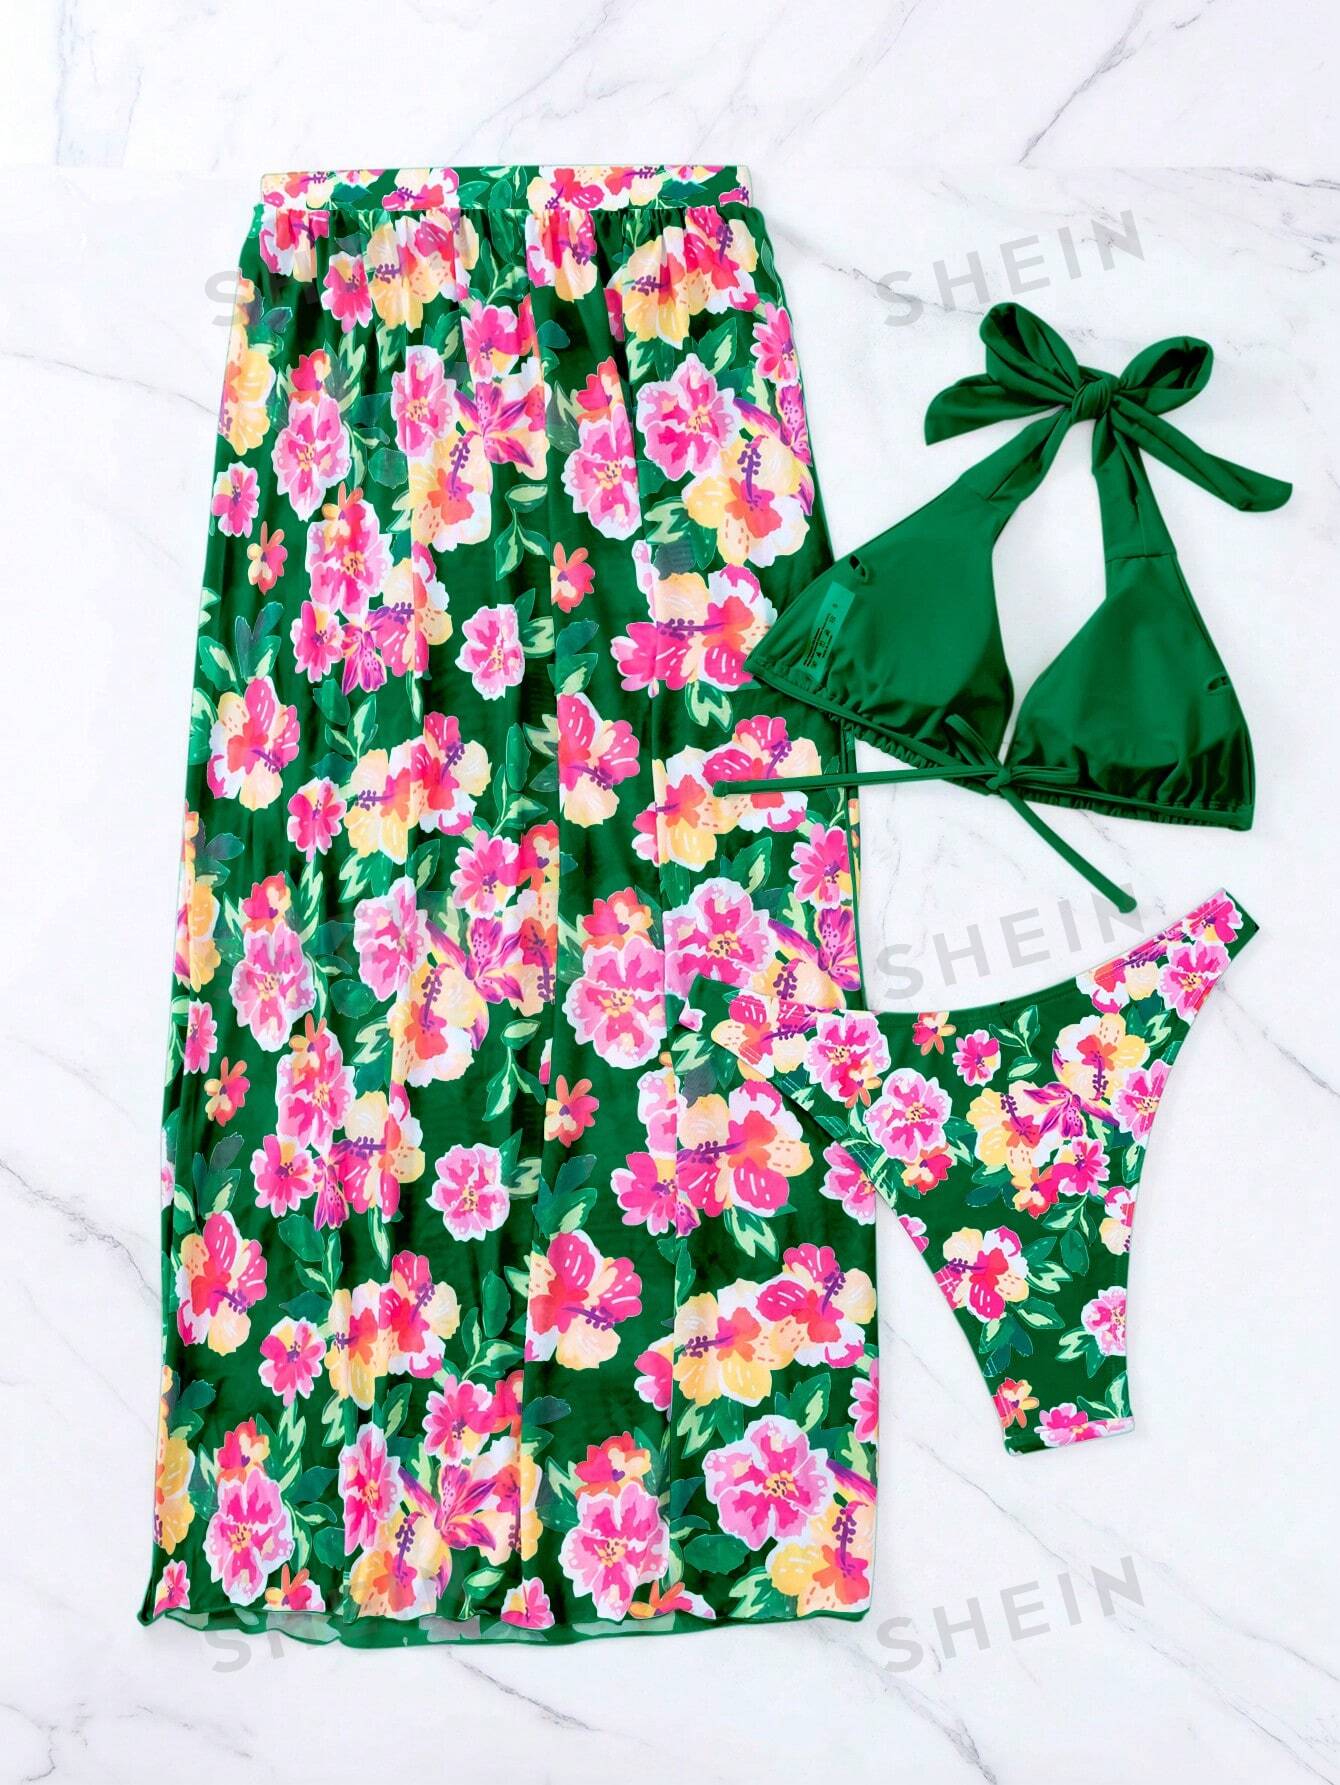 SHEIN Swim Vcay Комплект пляжного купальника с цветочным принтом, зеленый